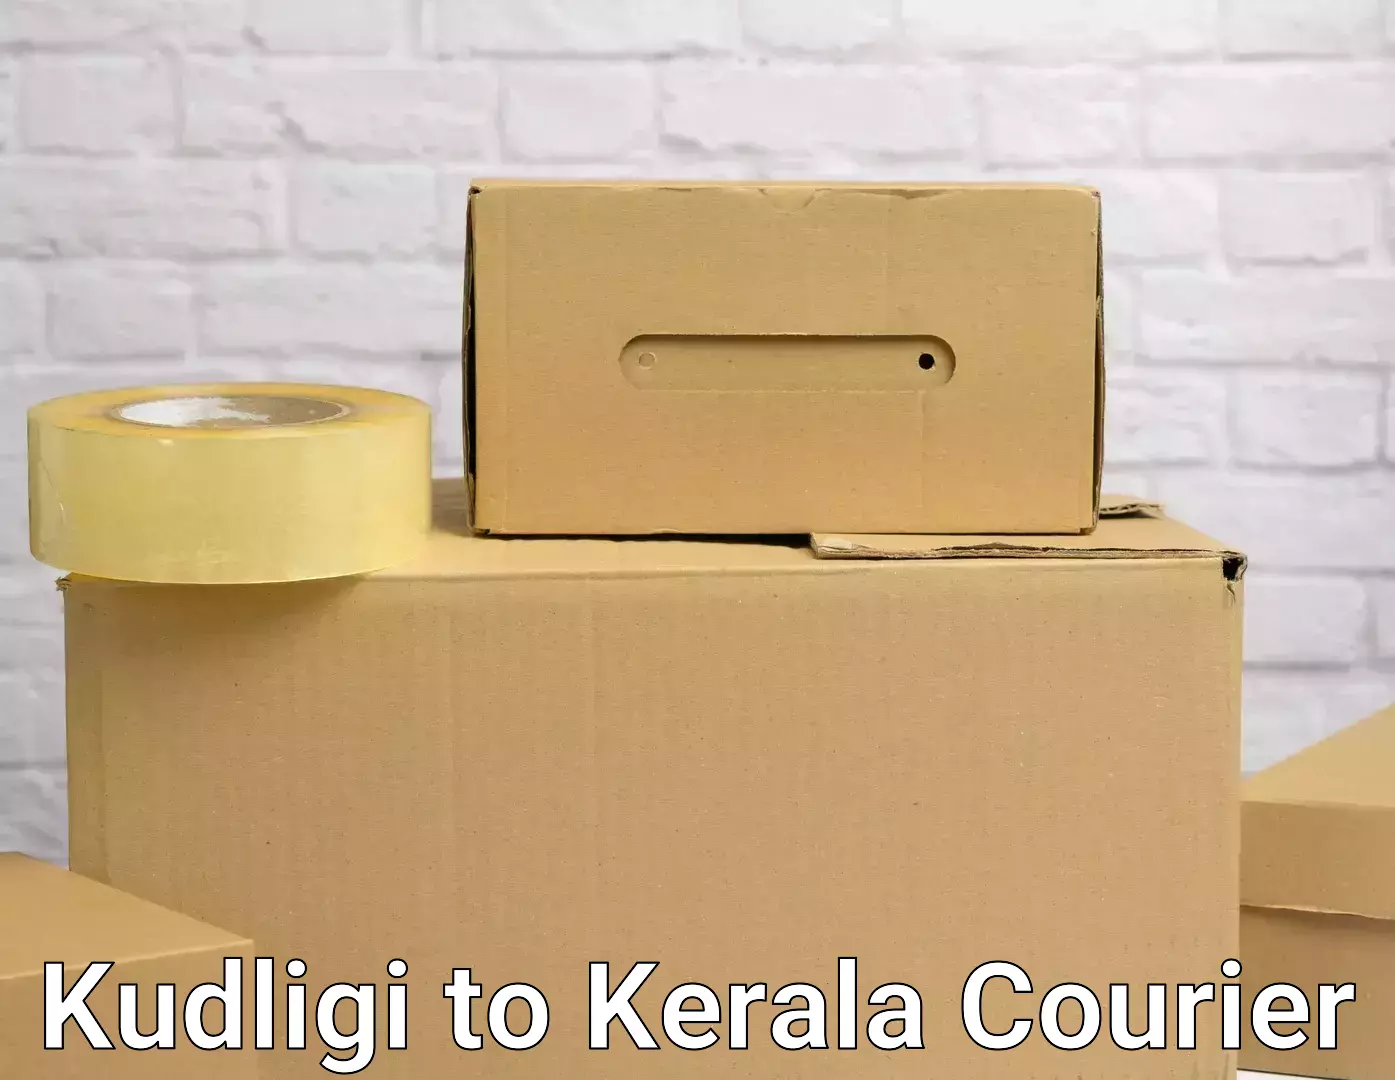 Efficient moving company Kudligi to Mavelikara